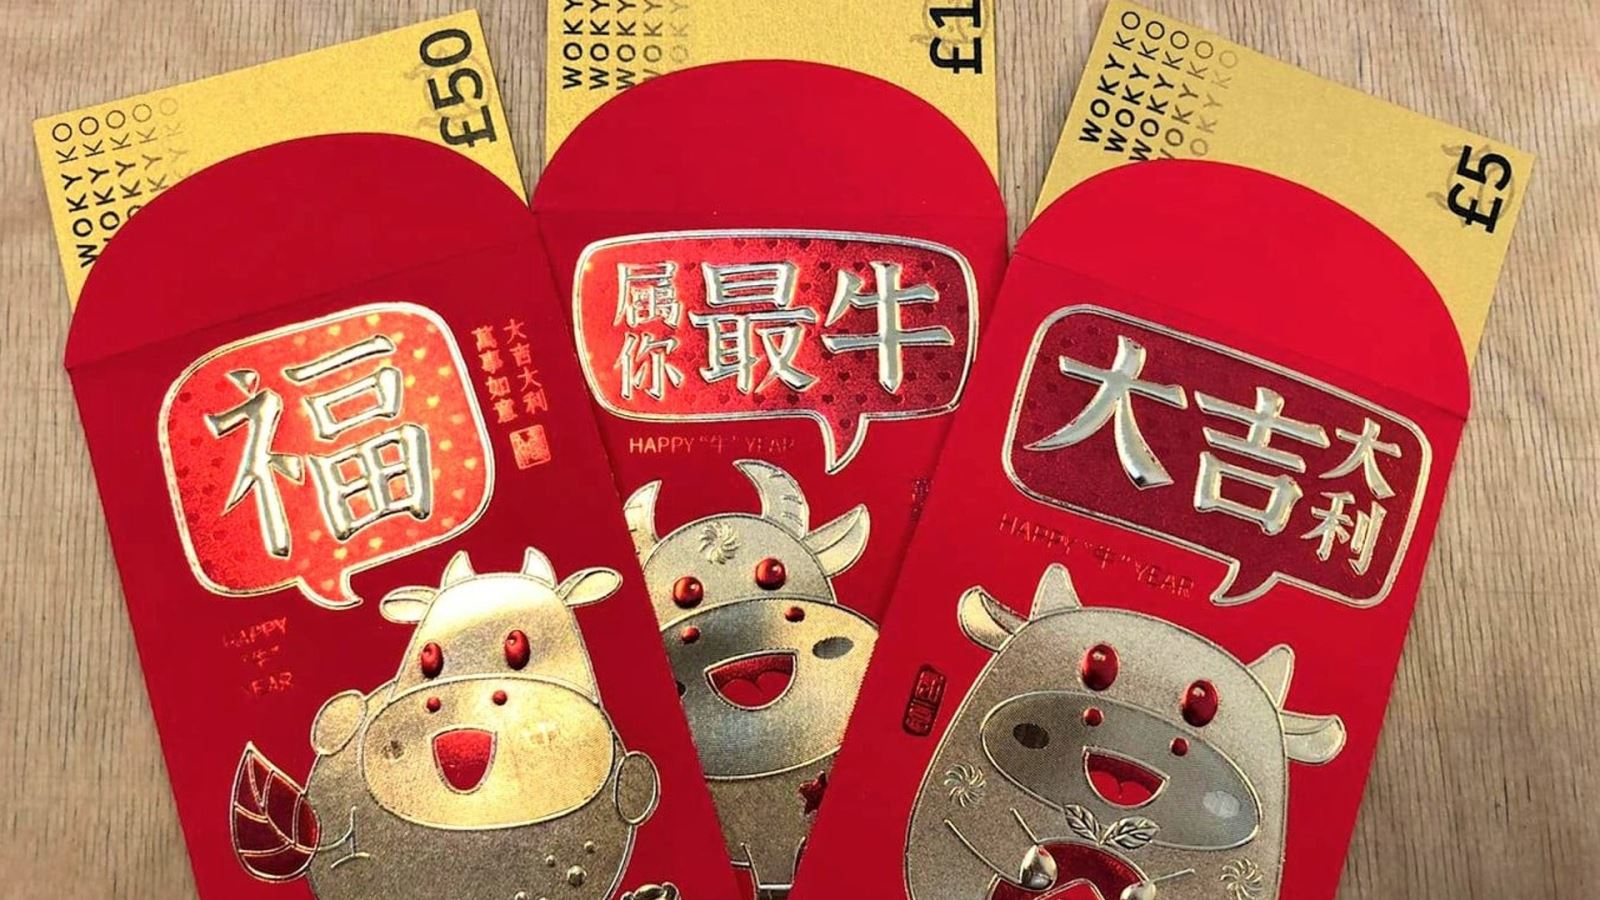 Woky Ko celebrates Chinese New Year with Woky Dollars